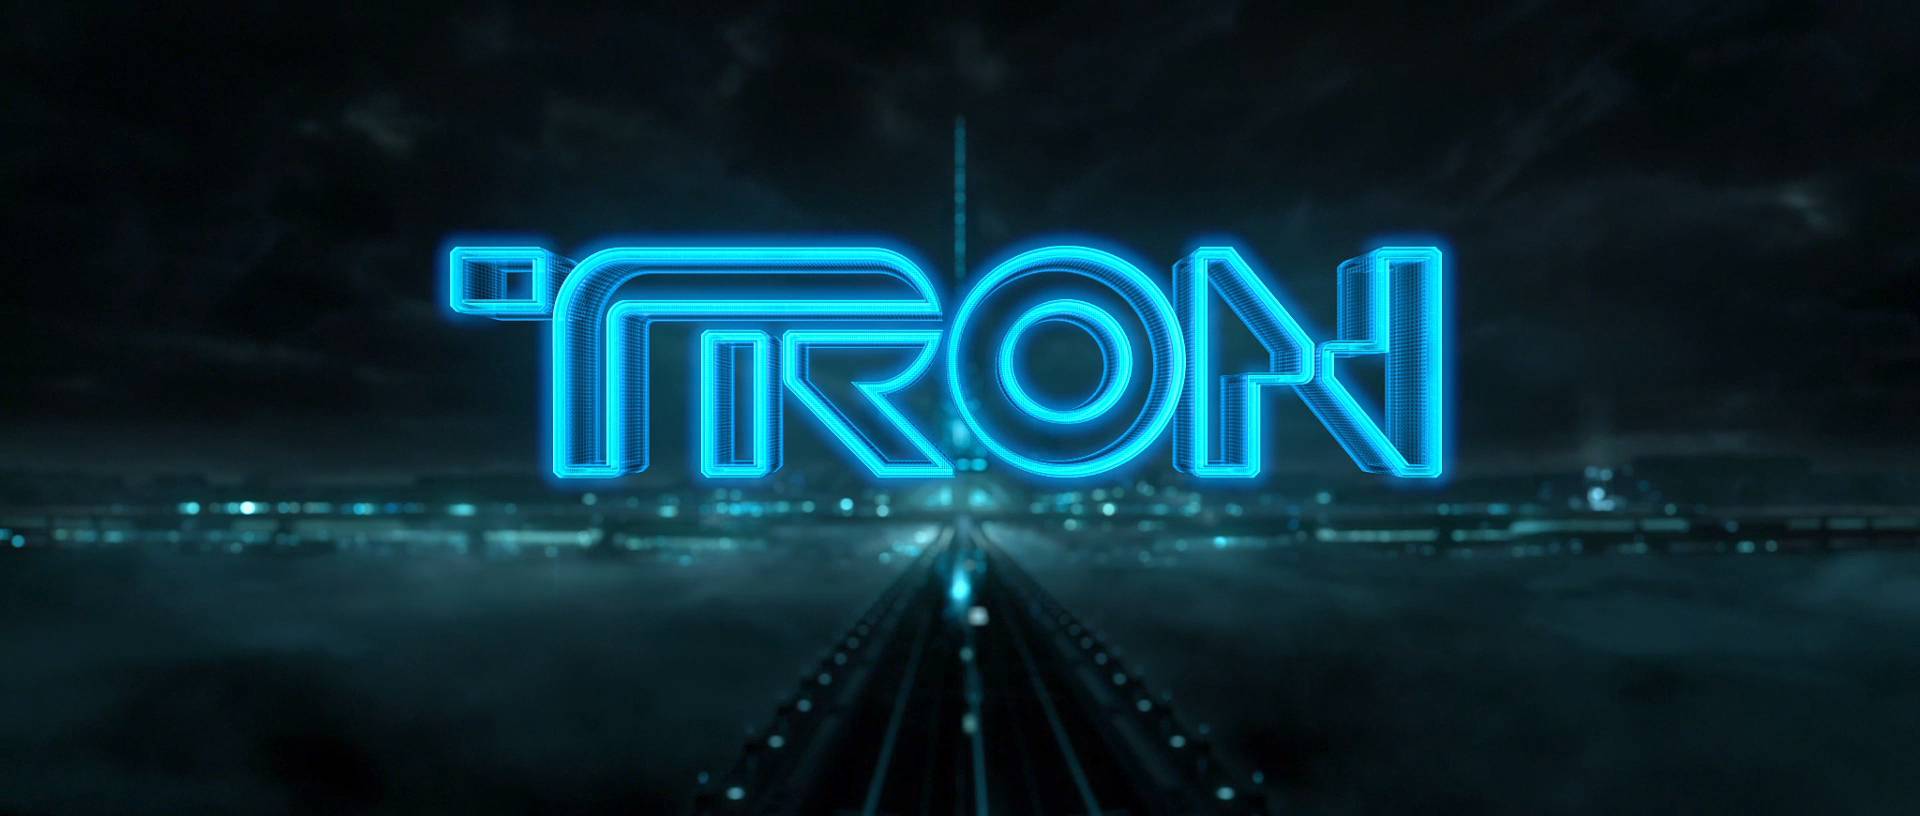 Tron-inspired HD desktop wallpaper by Disney